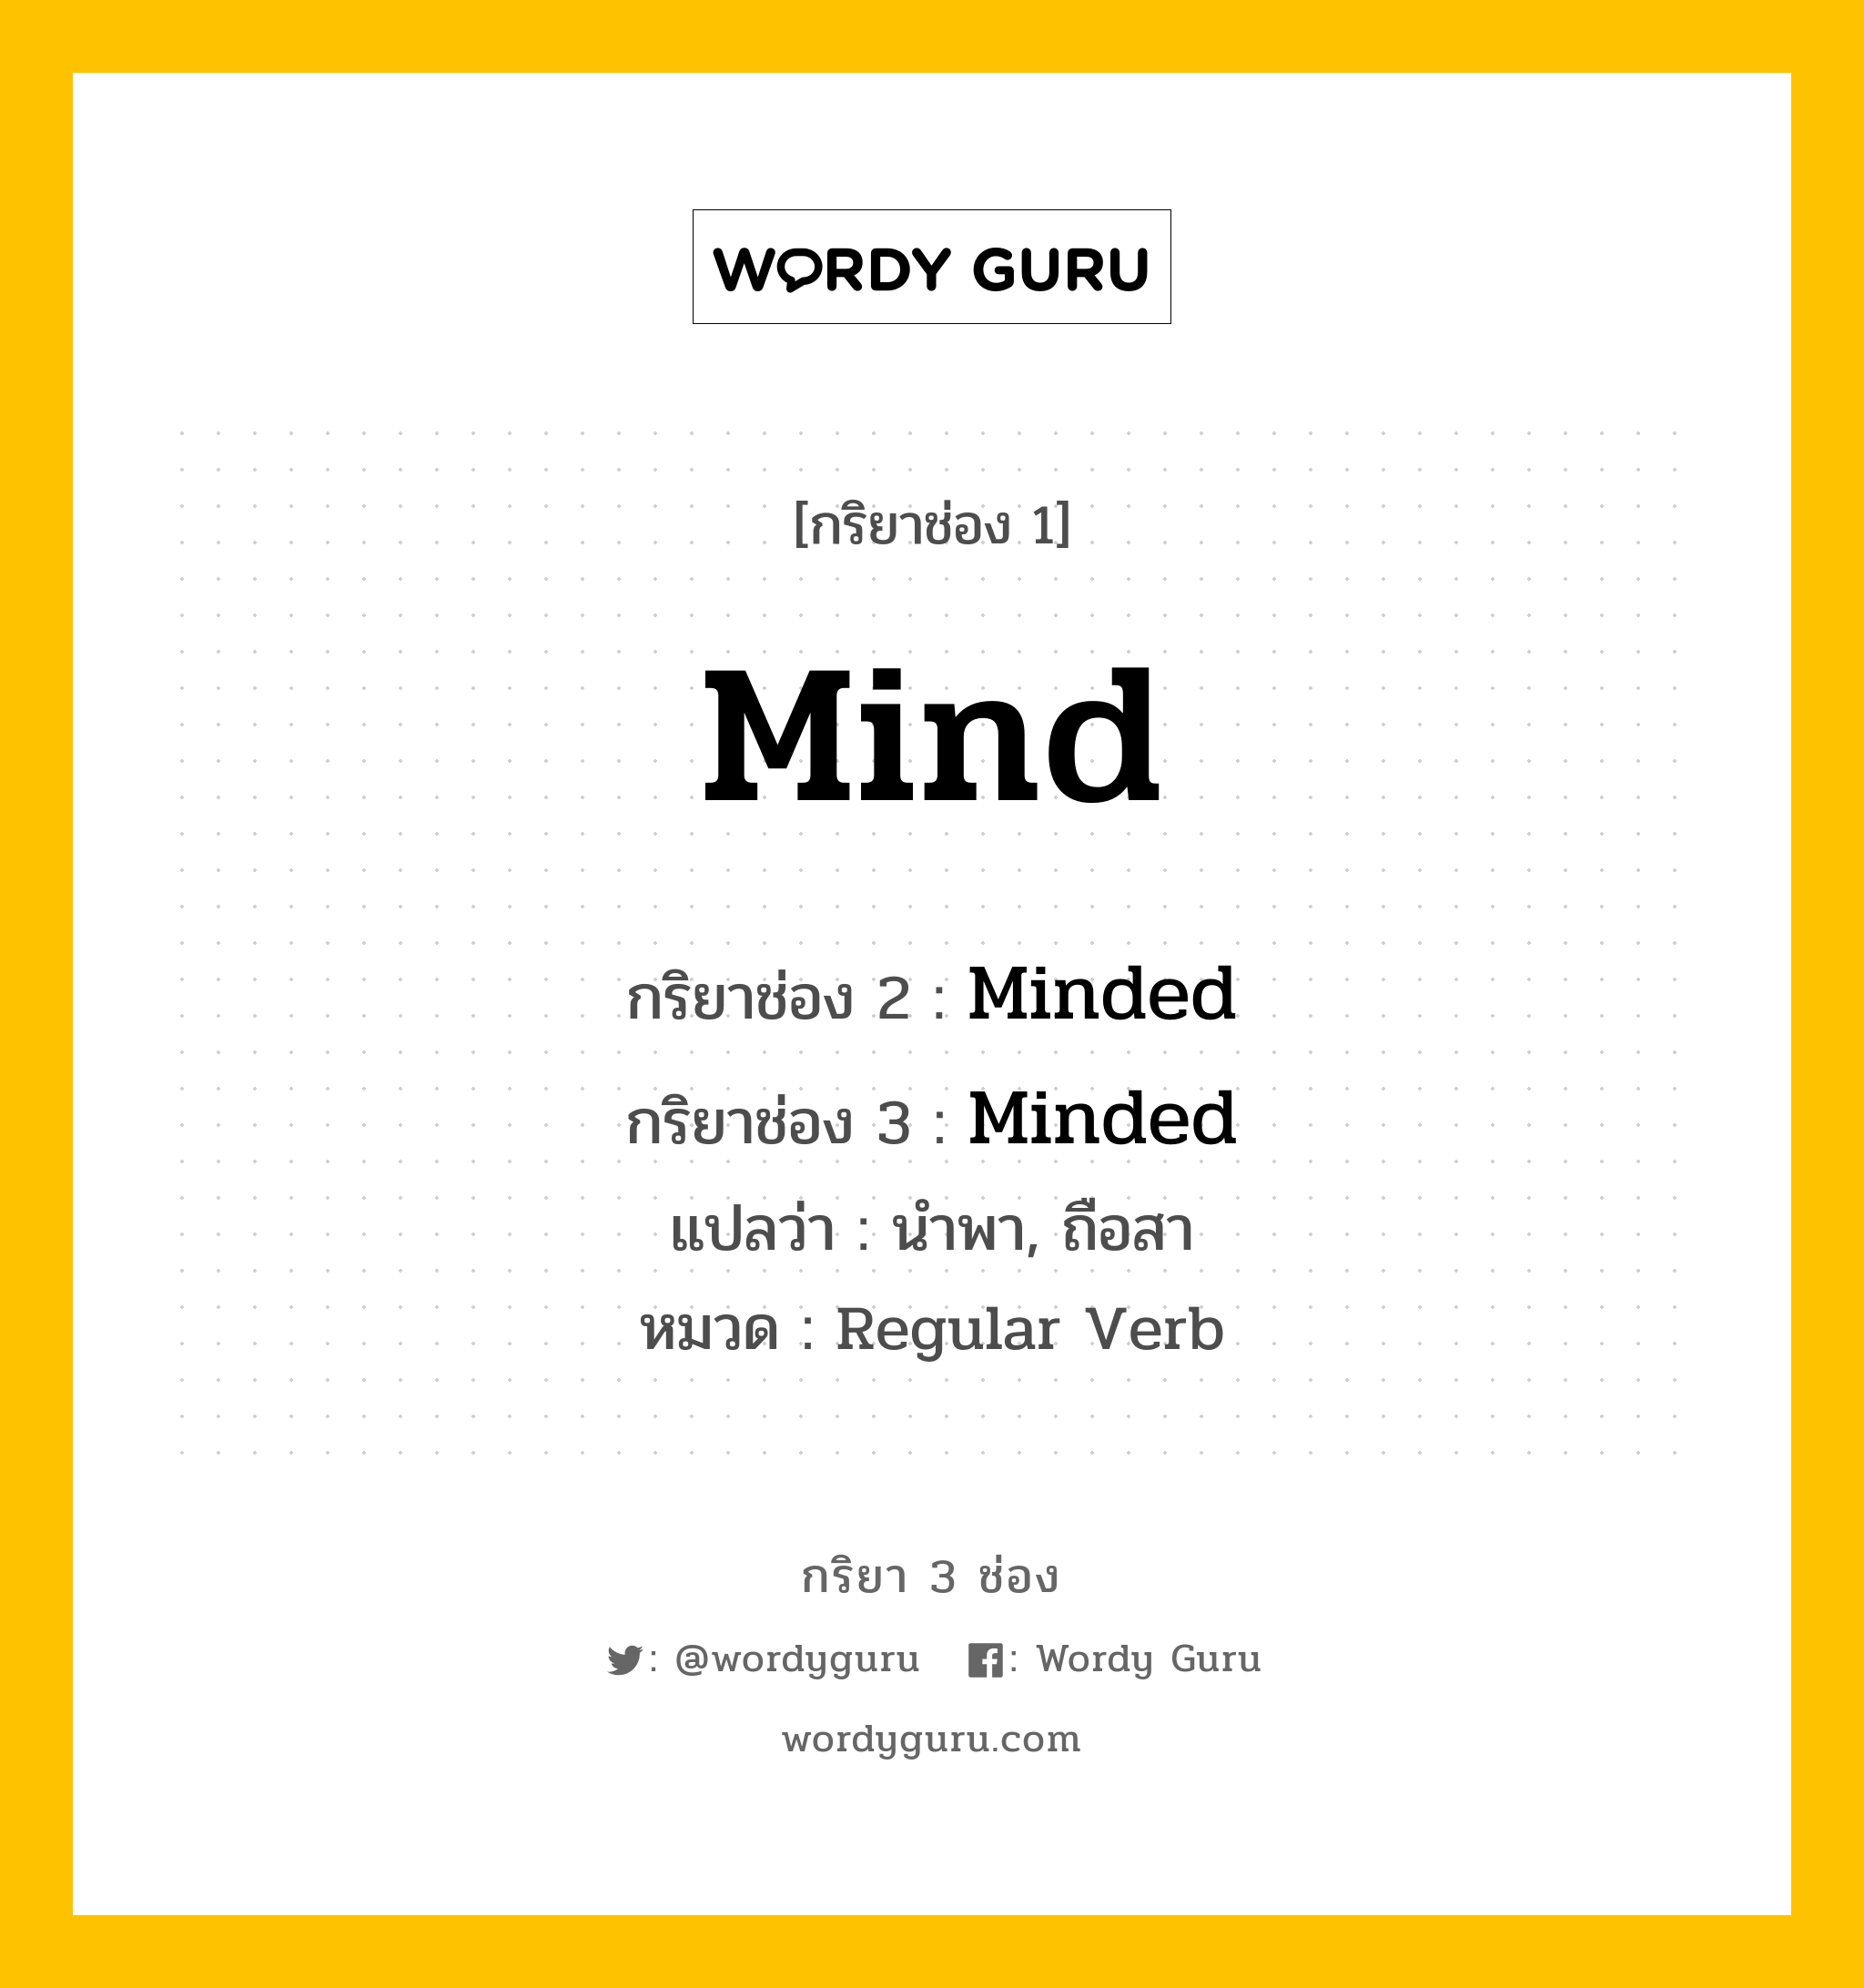 กริยา 3 ช่อง ของ Mind คืออะไร? มาดูคำอ่าน คำแปลกันเลย, กริยาช่อง 1 Mind กริยาช่อง 2 Minded กริยาช่อง 3 Minded แปลว่า นำพา, ถือสา หมวด Regular Verb หมวด Regular Verb